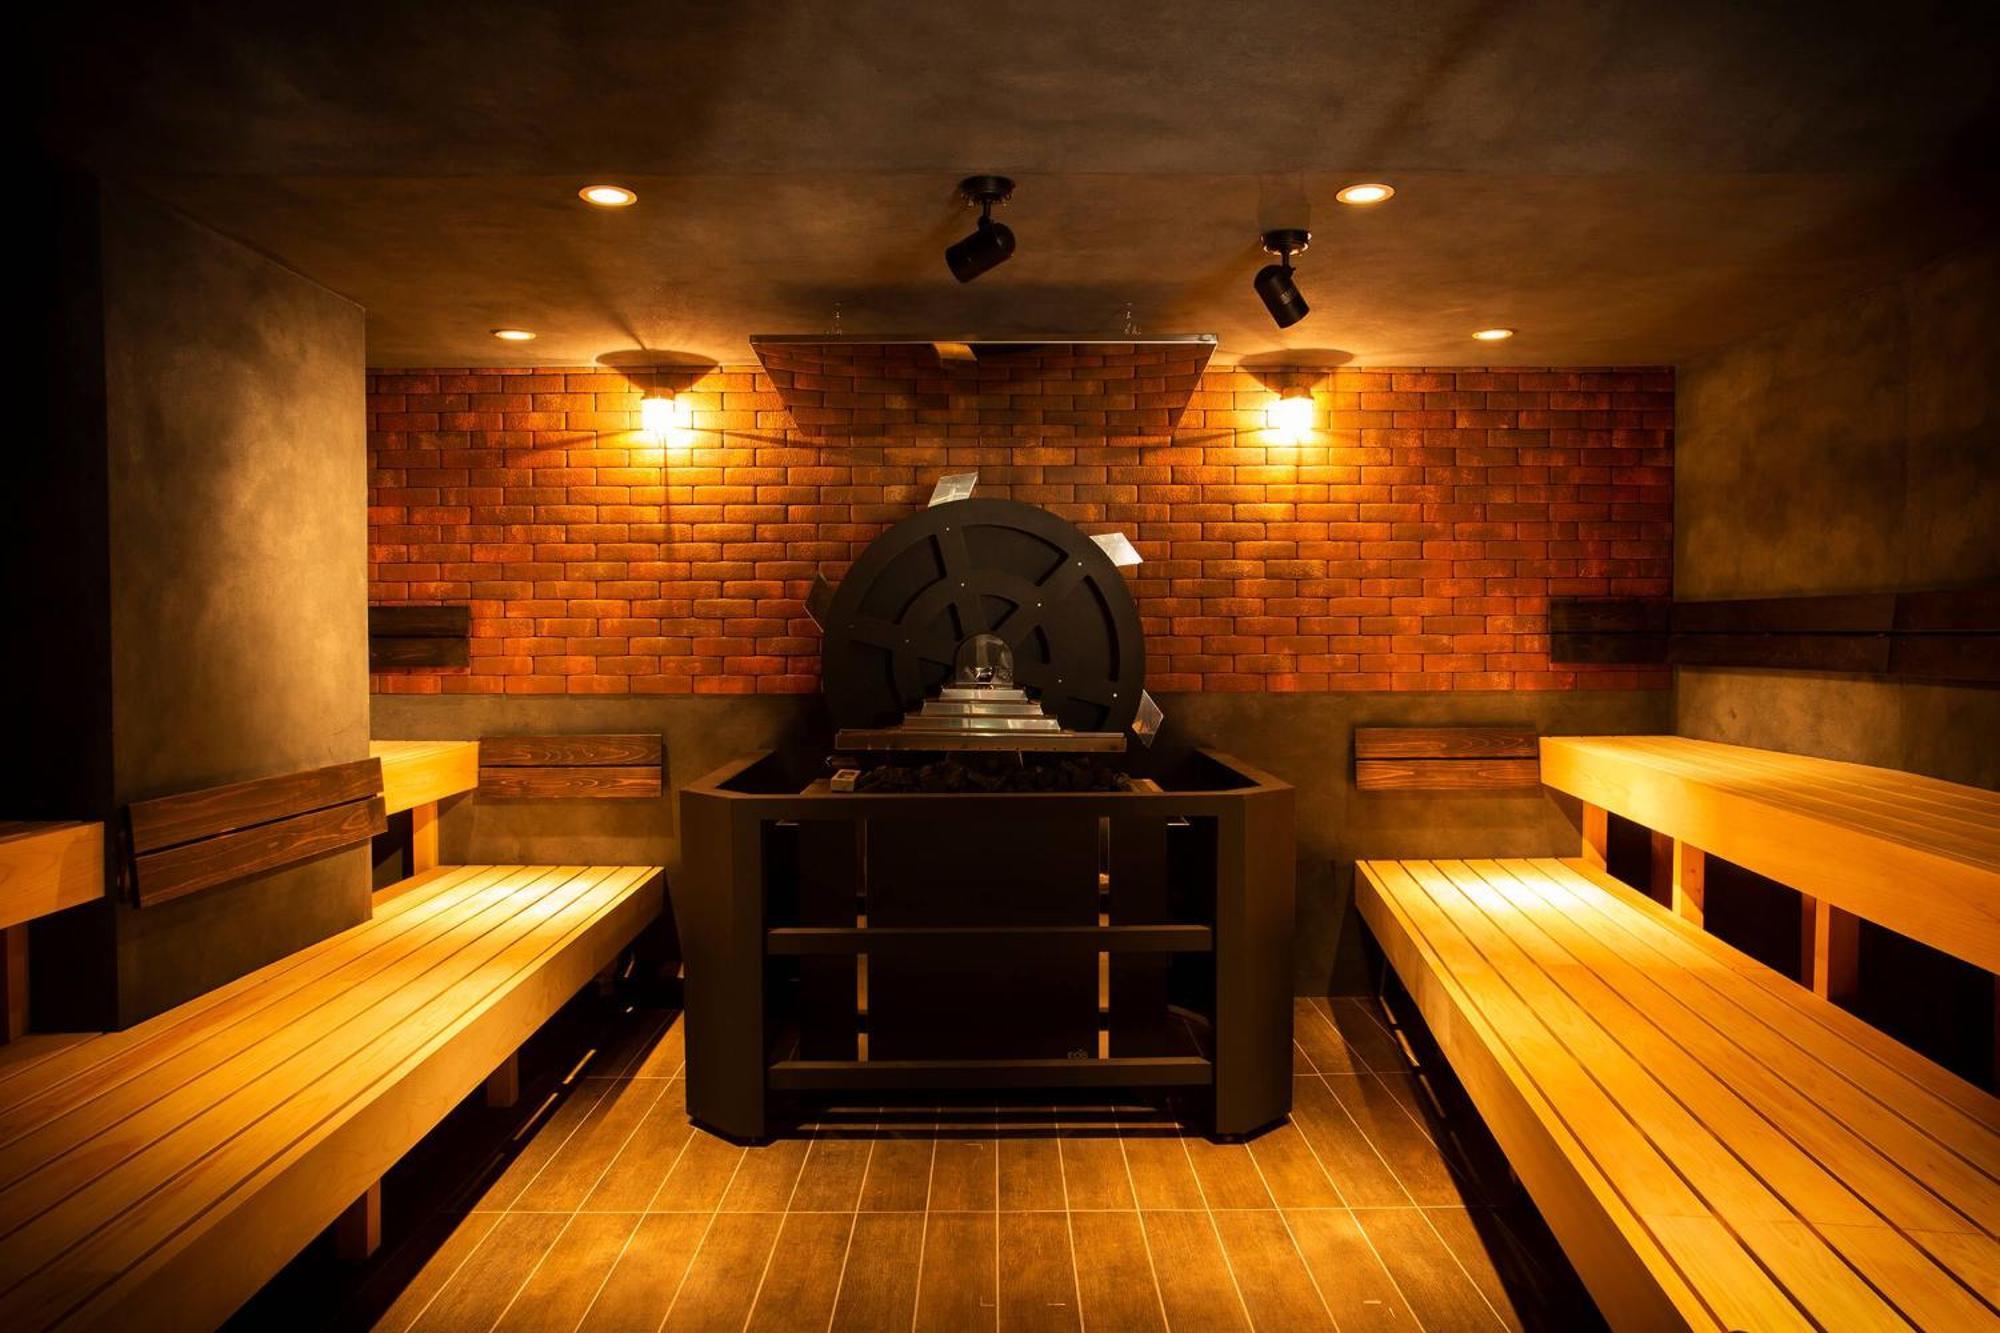 Hare-Tabi Sauna&Inn Yokohama Yokohama  Extérieur photo